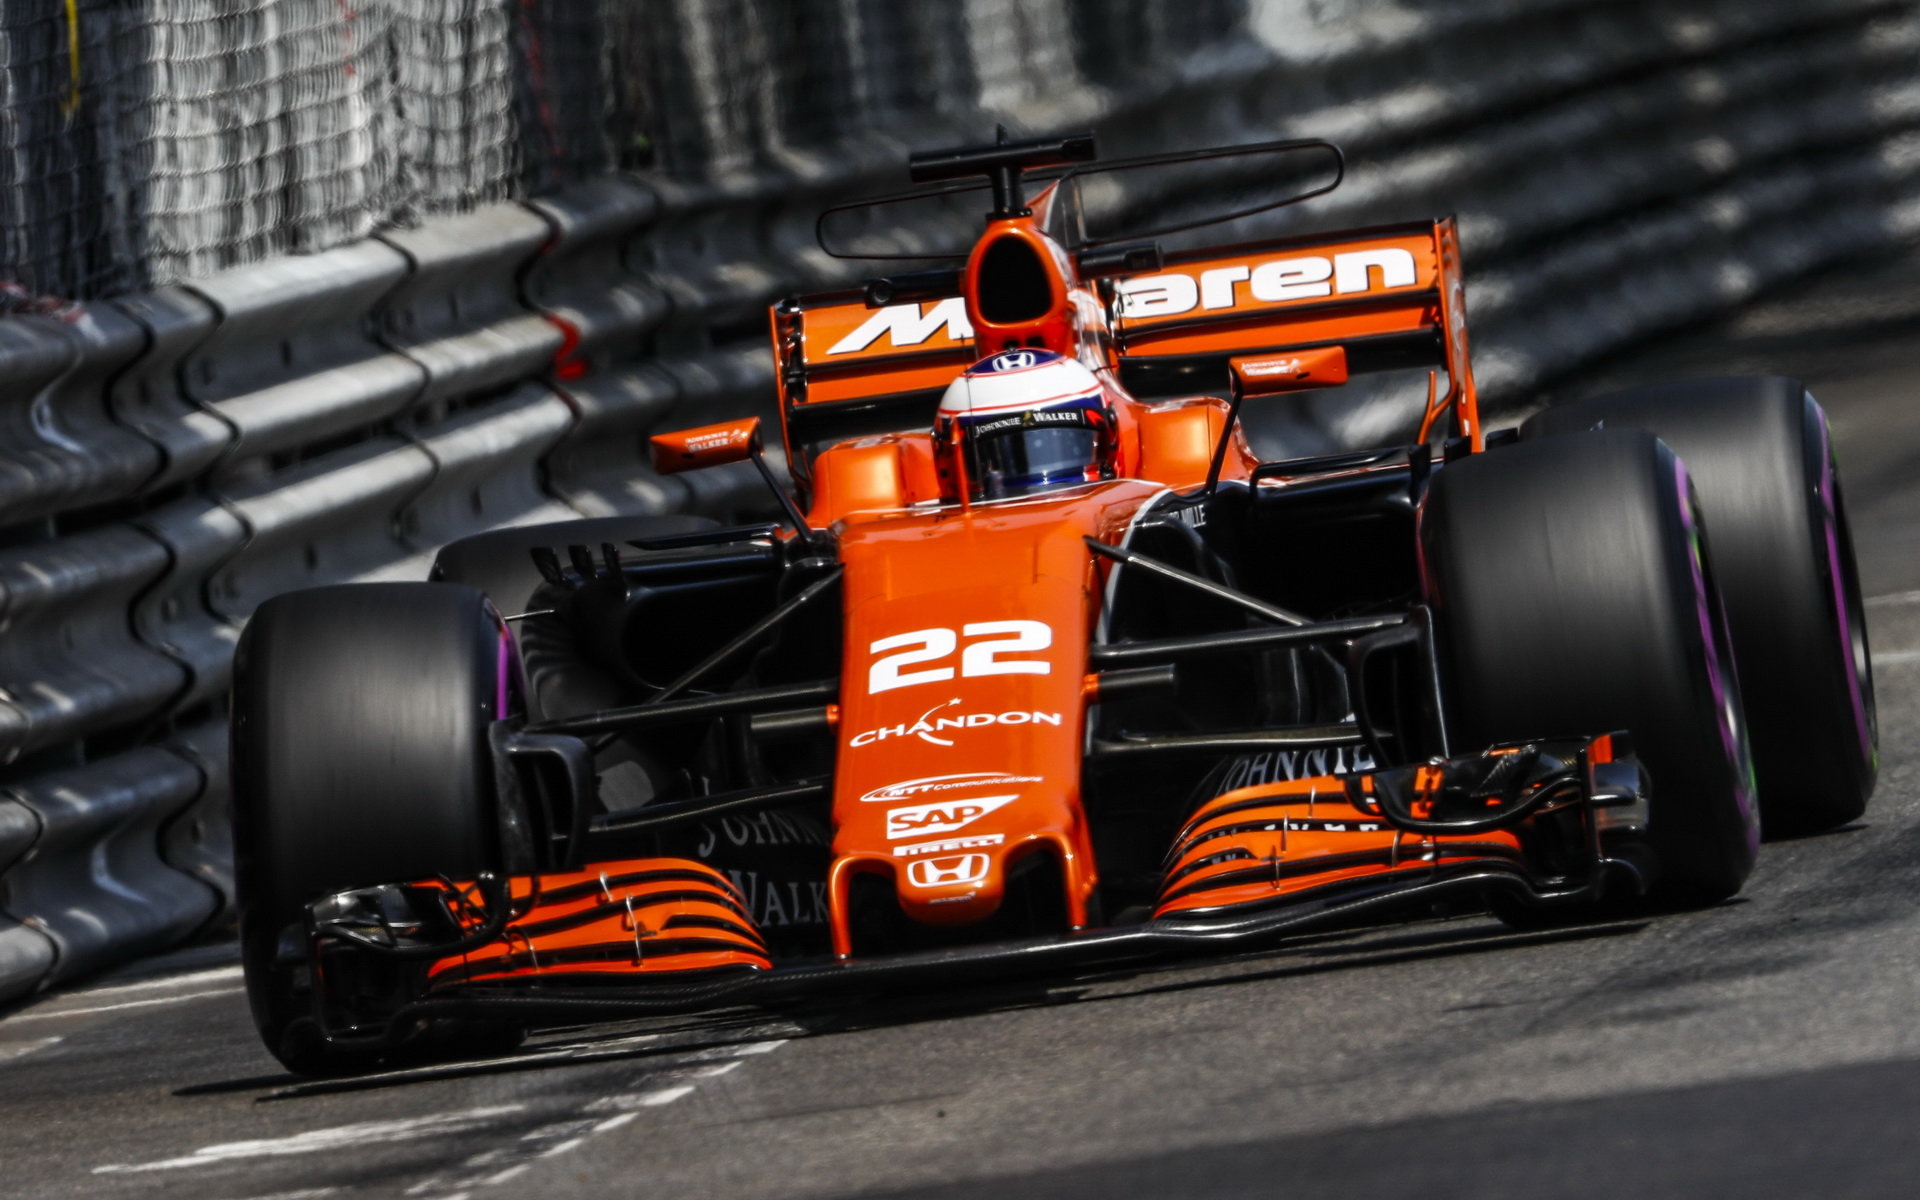 McLaren v Monaku postoupil po dalším vylepšení šasi s oběma auty do Q3, v neděli ale odjel opět bez bodu